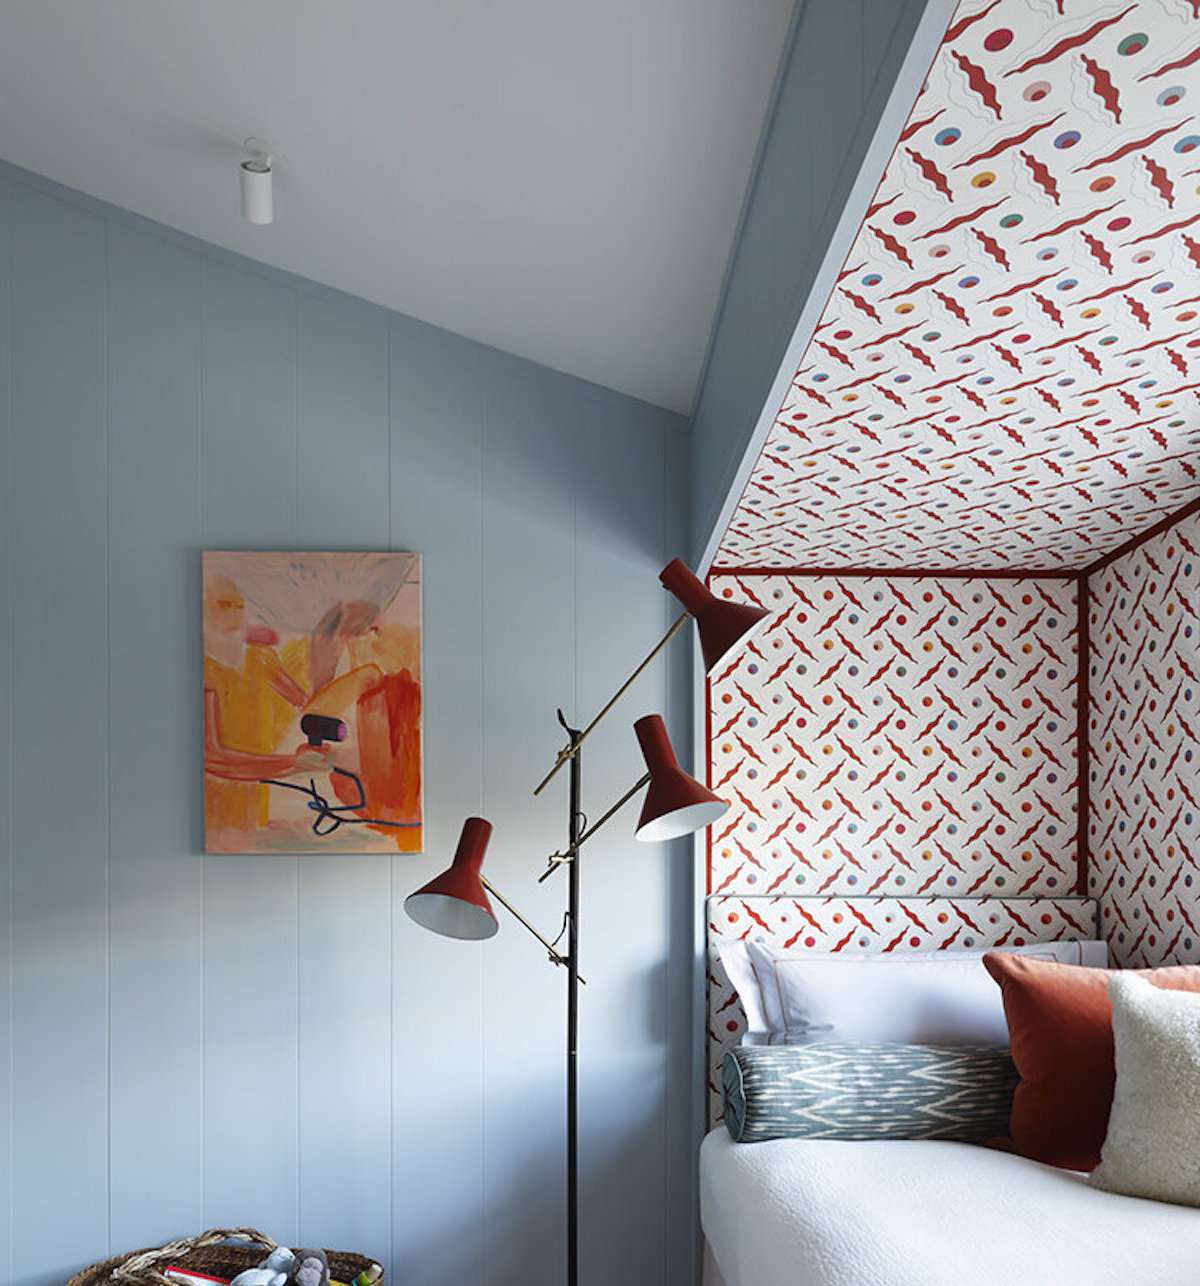 chambre avec murs bleu pâle, motif rouge et blanc dans coin contenant un lit, lampe rouge moderne